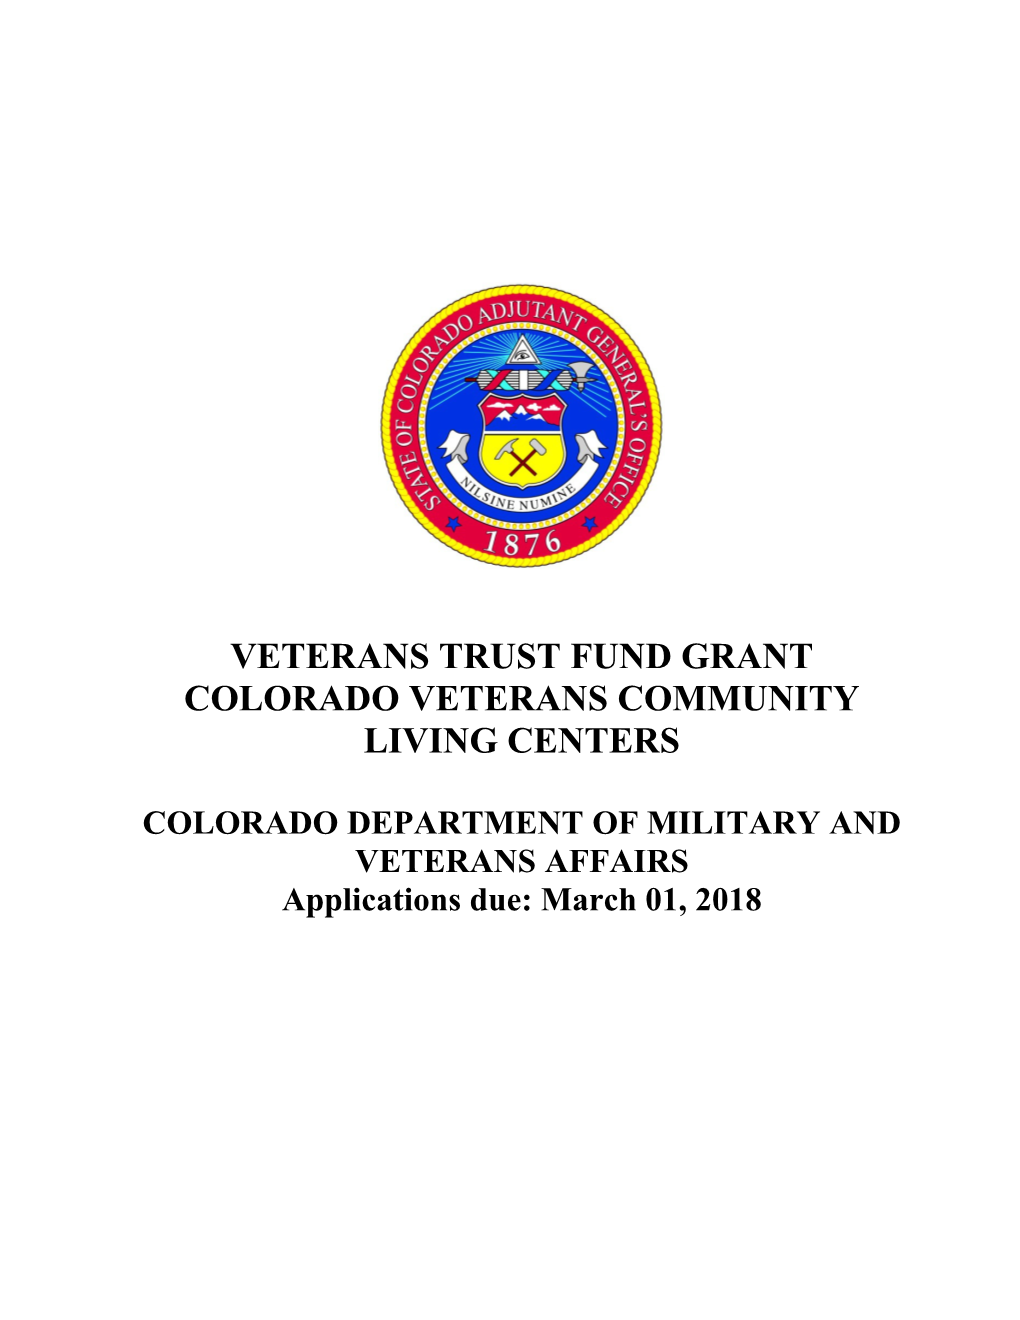 Veterans Trust Fund Grant